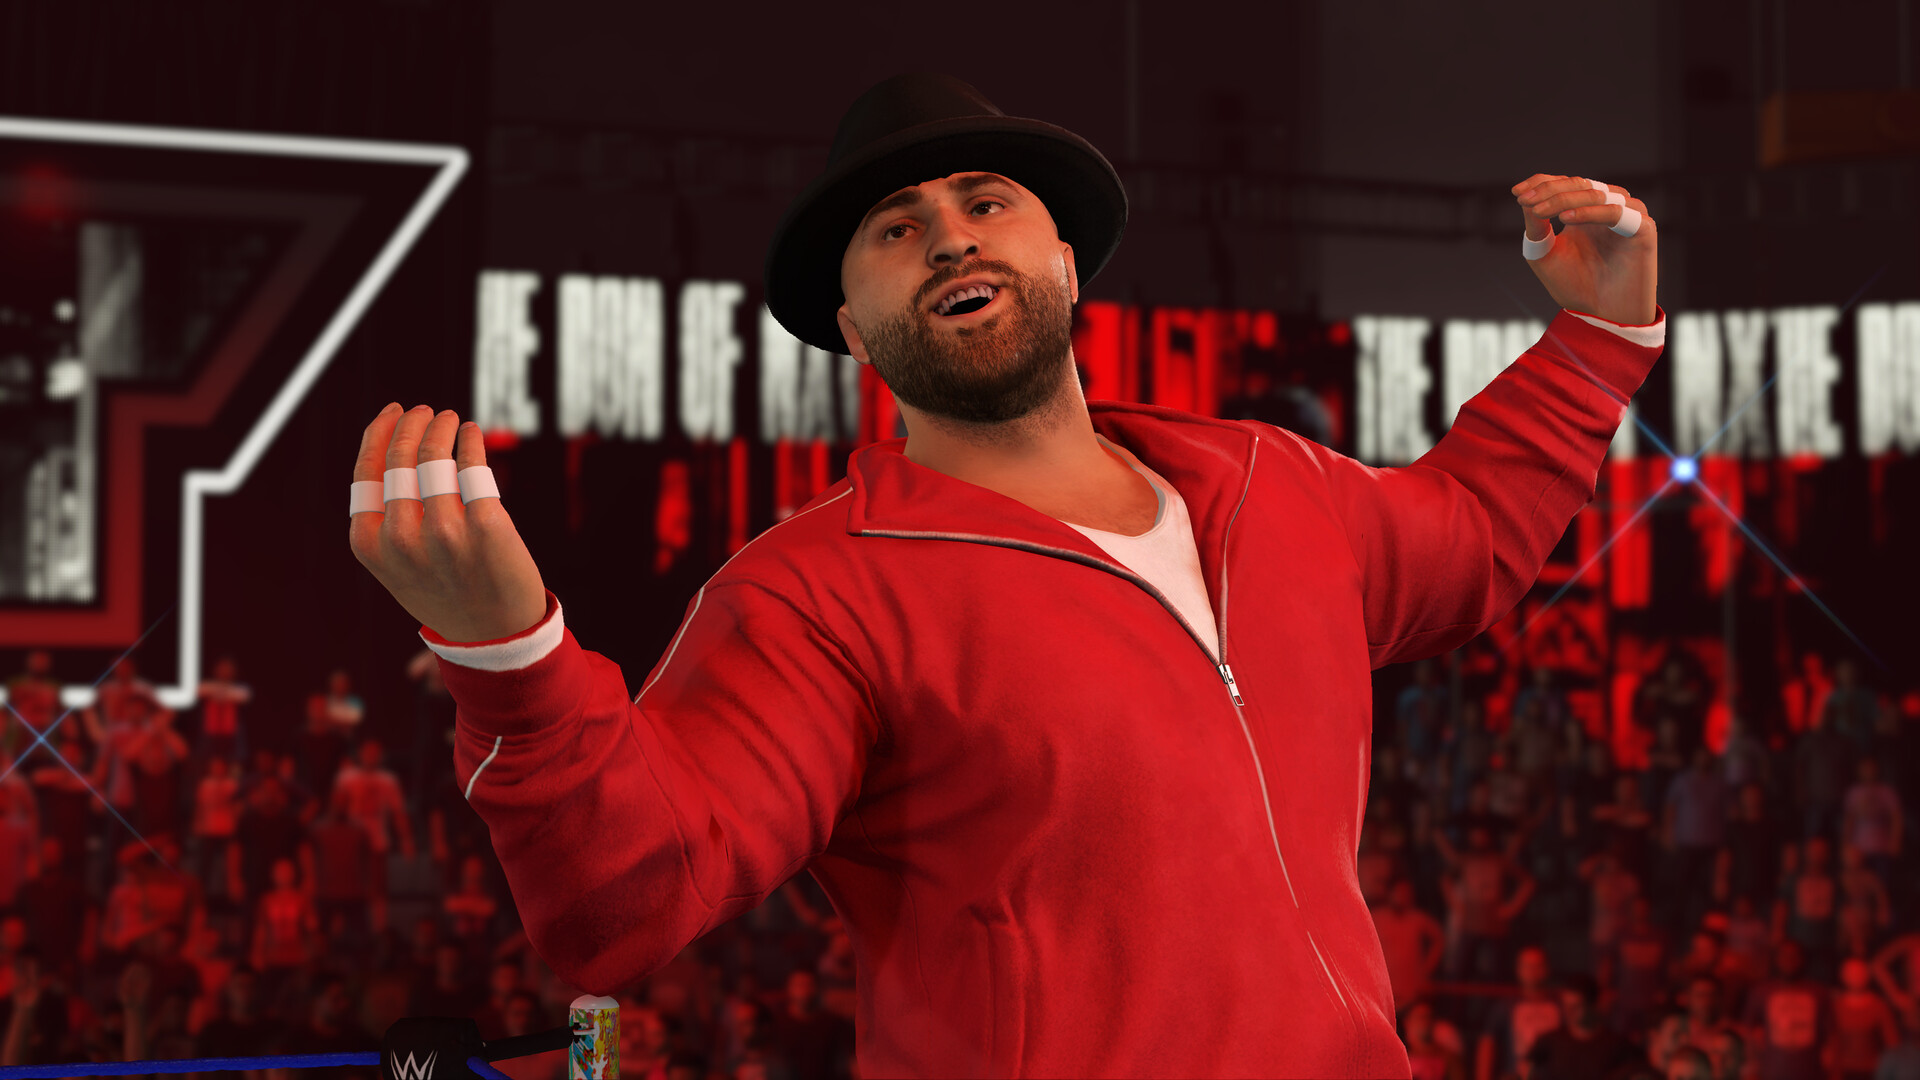 WWE 2K23 Revel with Wyatt Pack